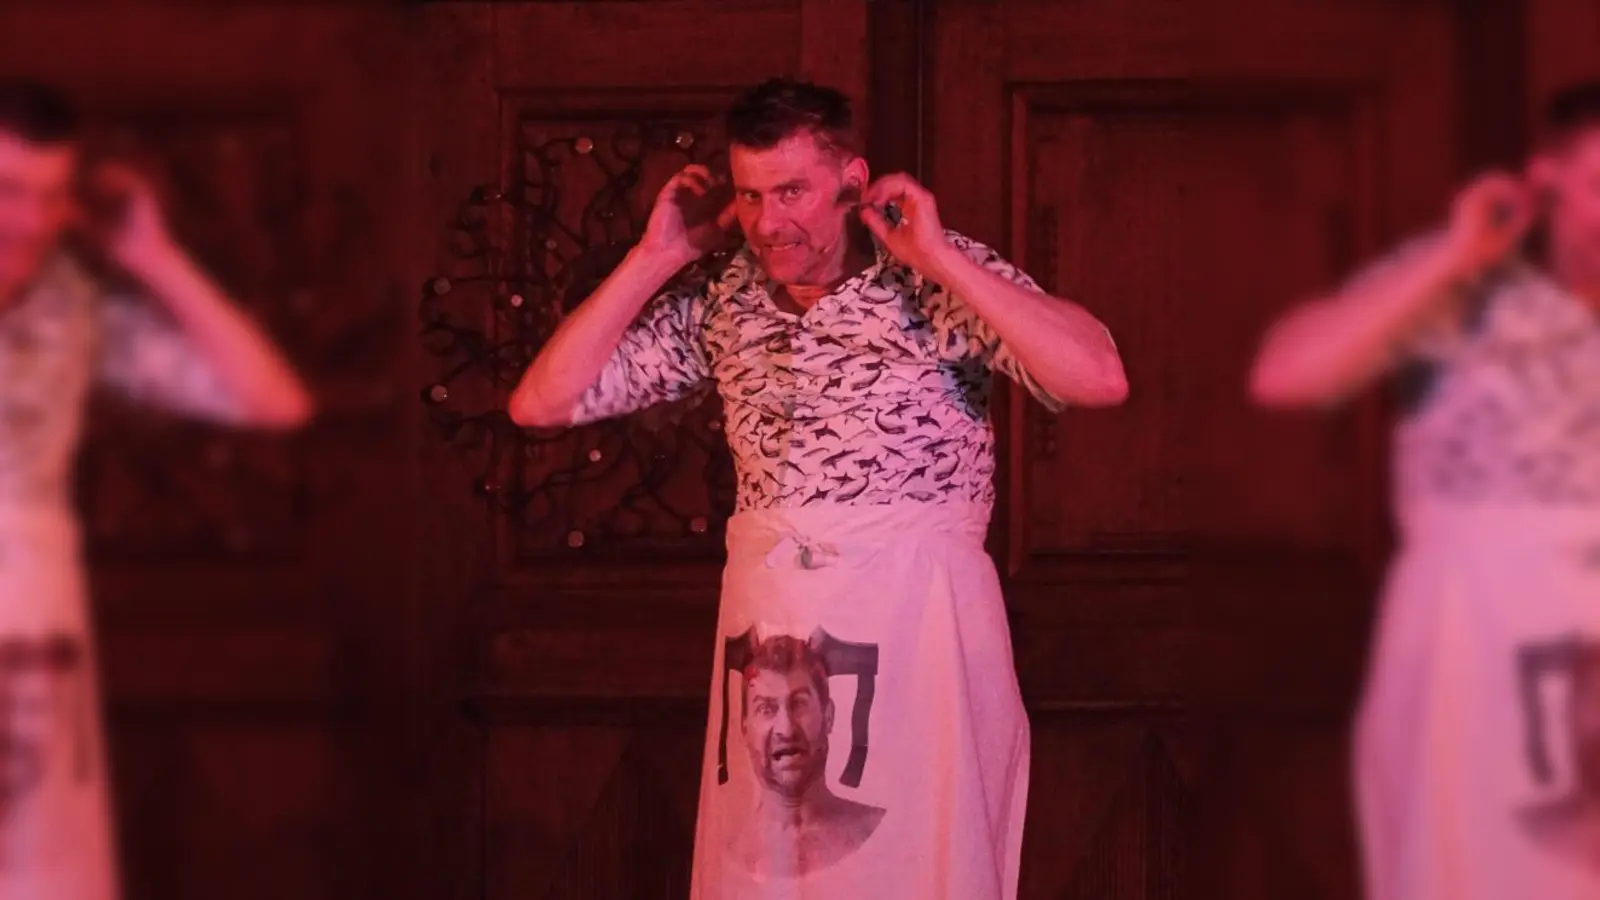 Kabarettist Michael Altinger lieferte bei seinem Auftritt in Blumenthal allerhand Spötteleien auf gewisse Individuen der Gesellschaft. Denen begegnet der Zuschauer im neuen Programm „Schlaglicht” auf einer Grillparty.